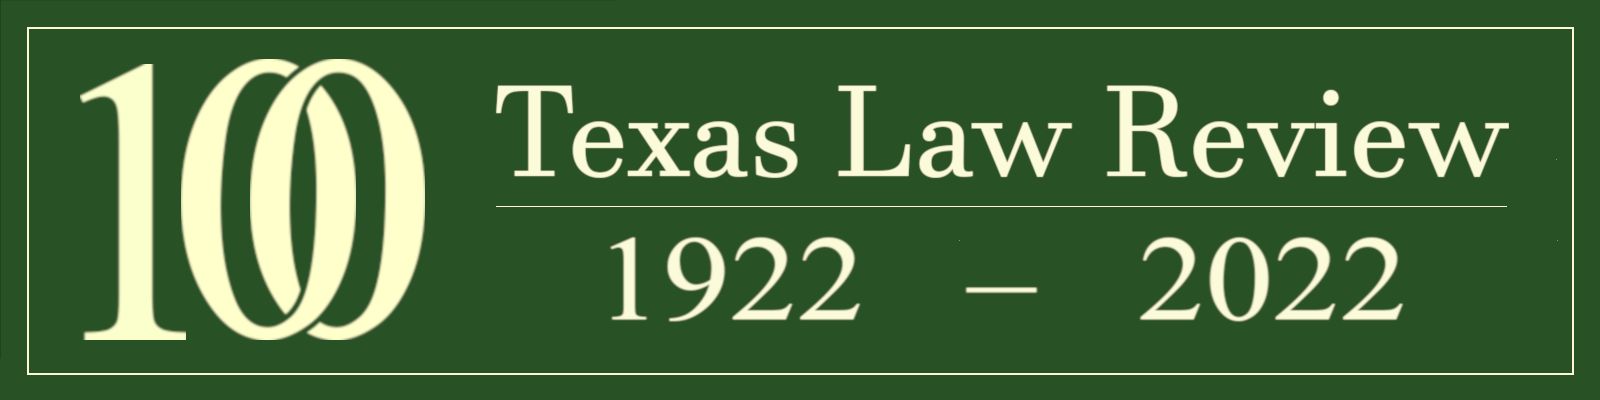 Texas Law Review Members & Alumni